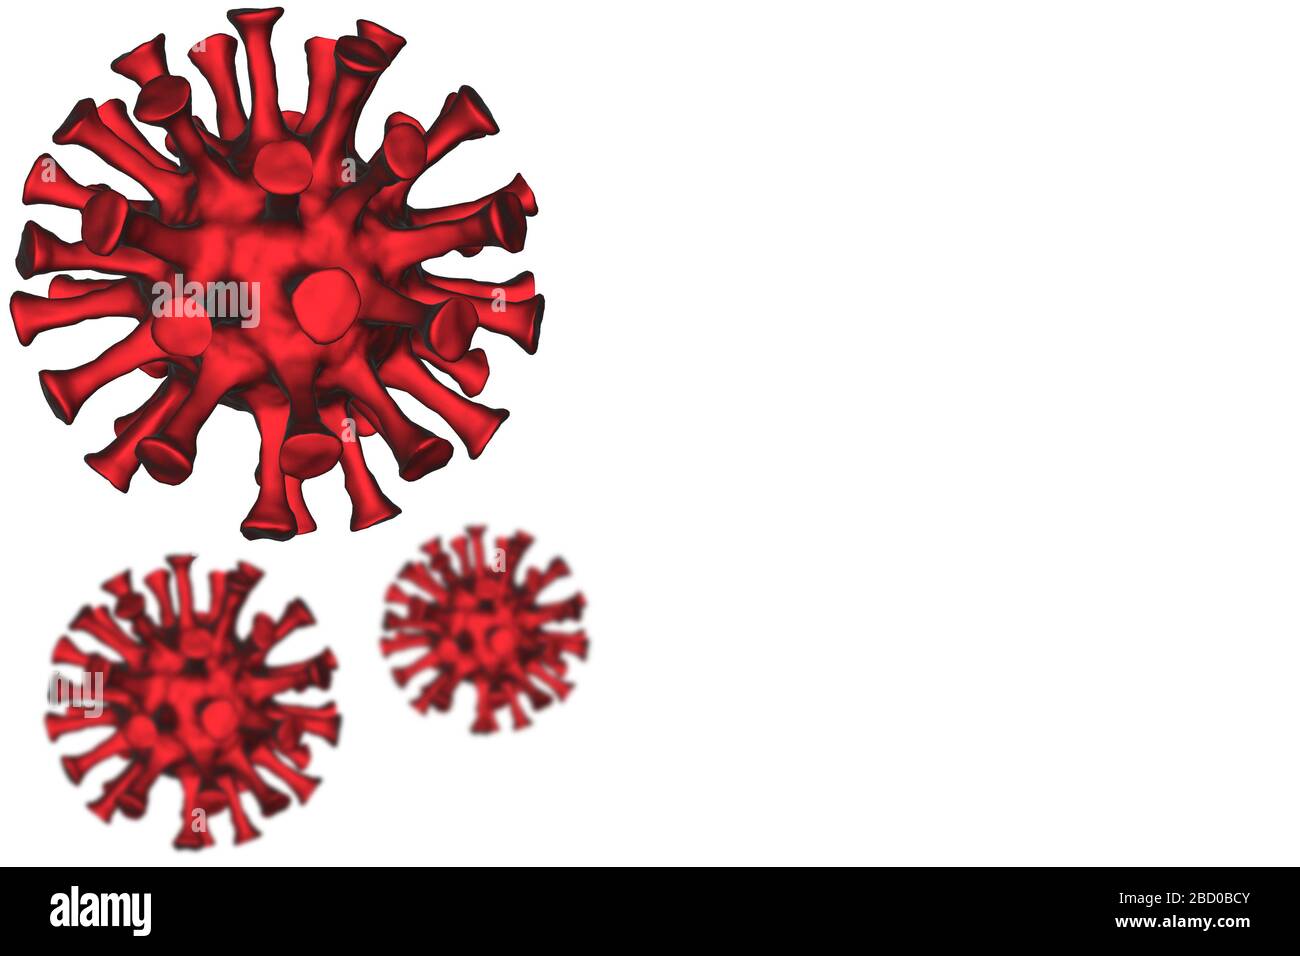 3d-Modell eines Coronavirus Coronavirus covid 19 RNA Virus vor einem einfachen Hintergrund, der Platz für Text bietet Stockfoto